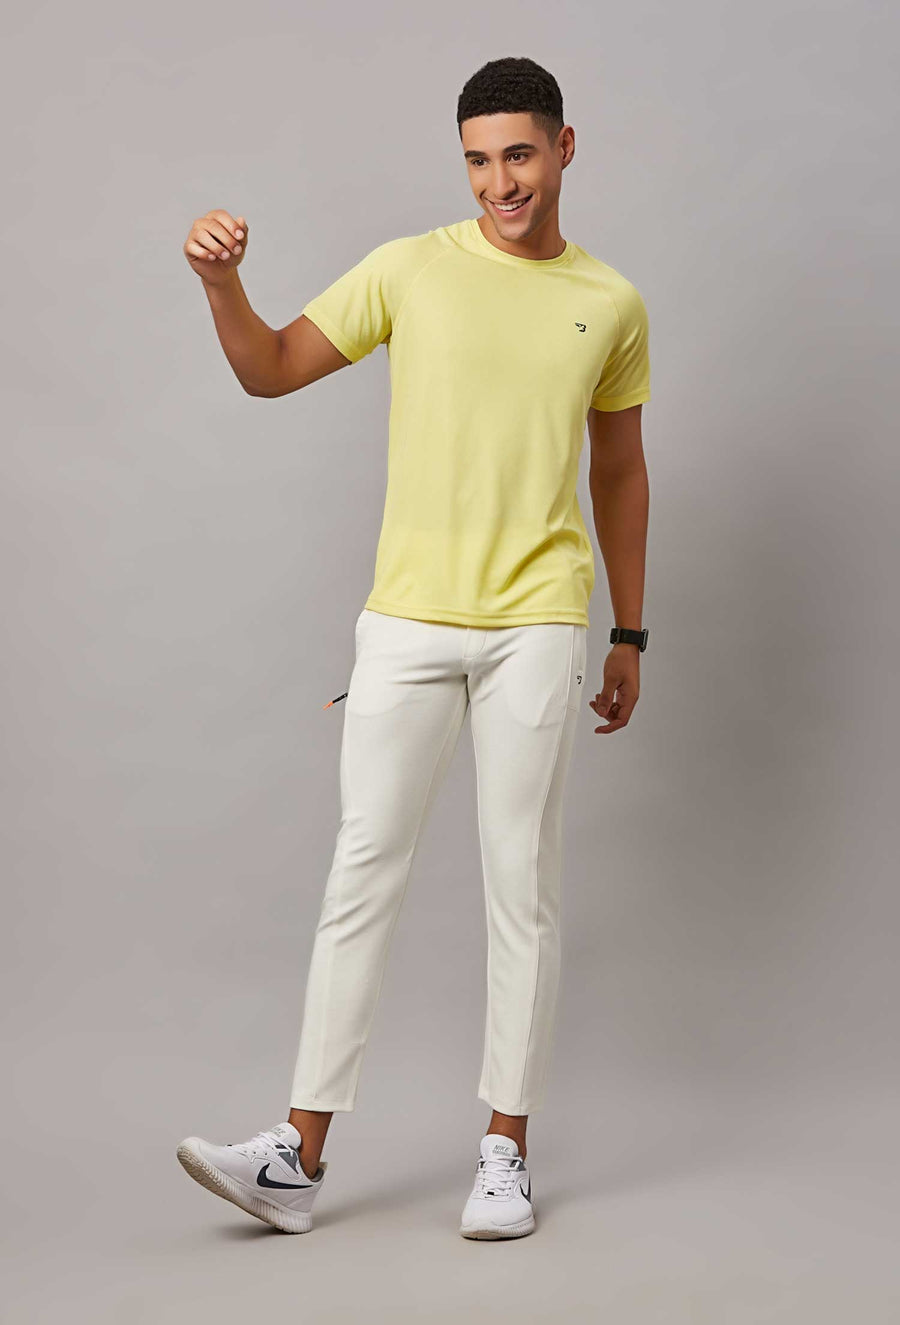 Men's Lemon Sports T-Shirt